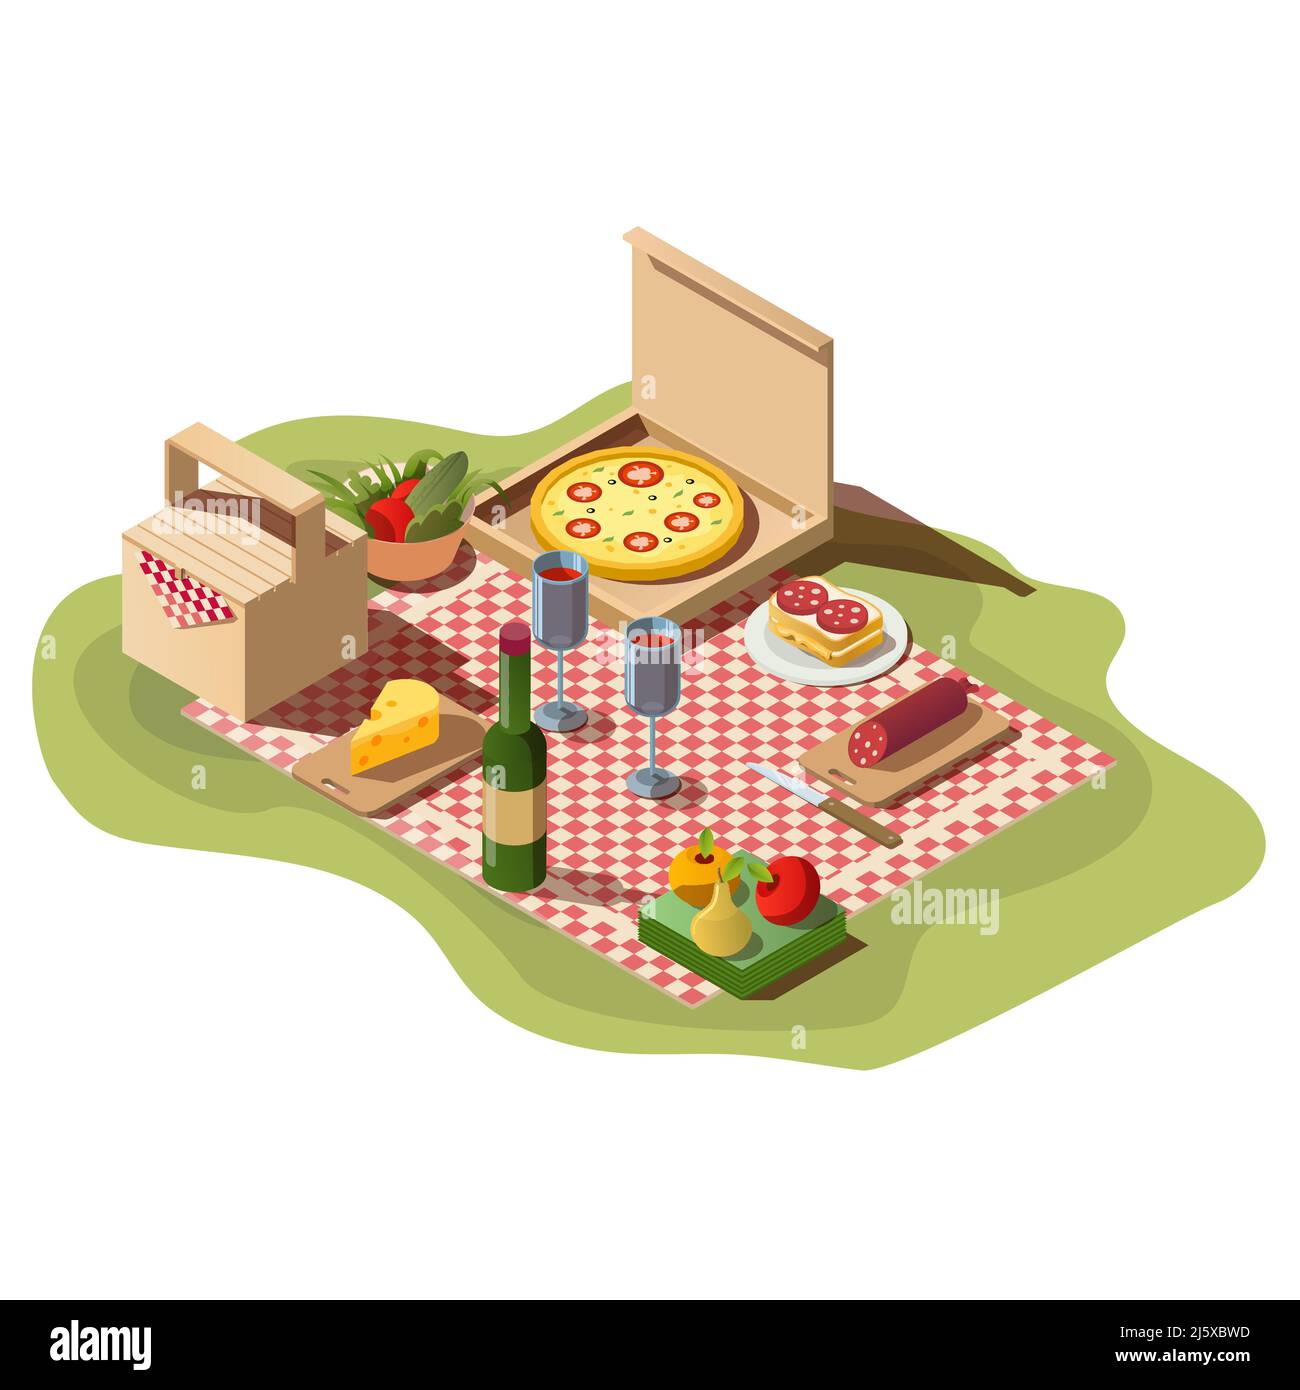 Isometrisches Picknick-Set mit Speisen, Pizzabox, Wein und Korb. Frische Mahlzeit, Obst, Flasche mit Gläsern und Tischdecke zum Abendessen oder Mittagessen im Freien isoliert Stock Vektor